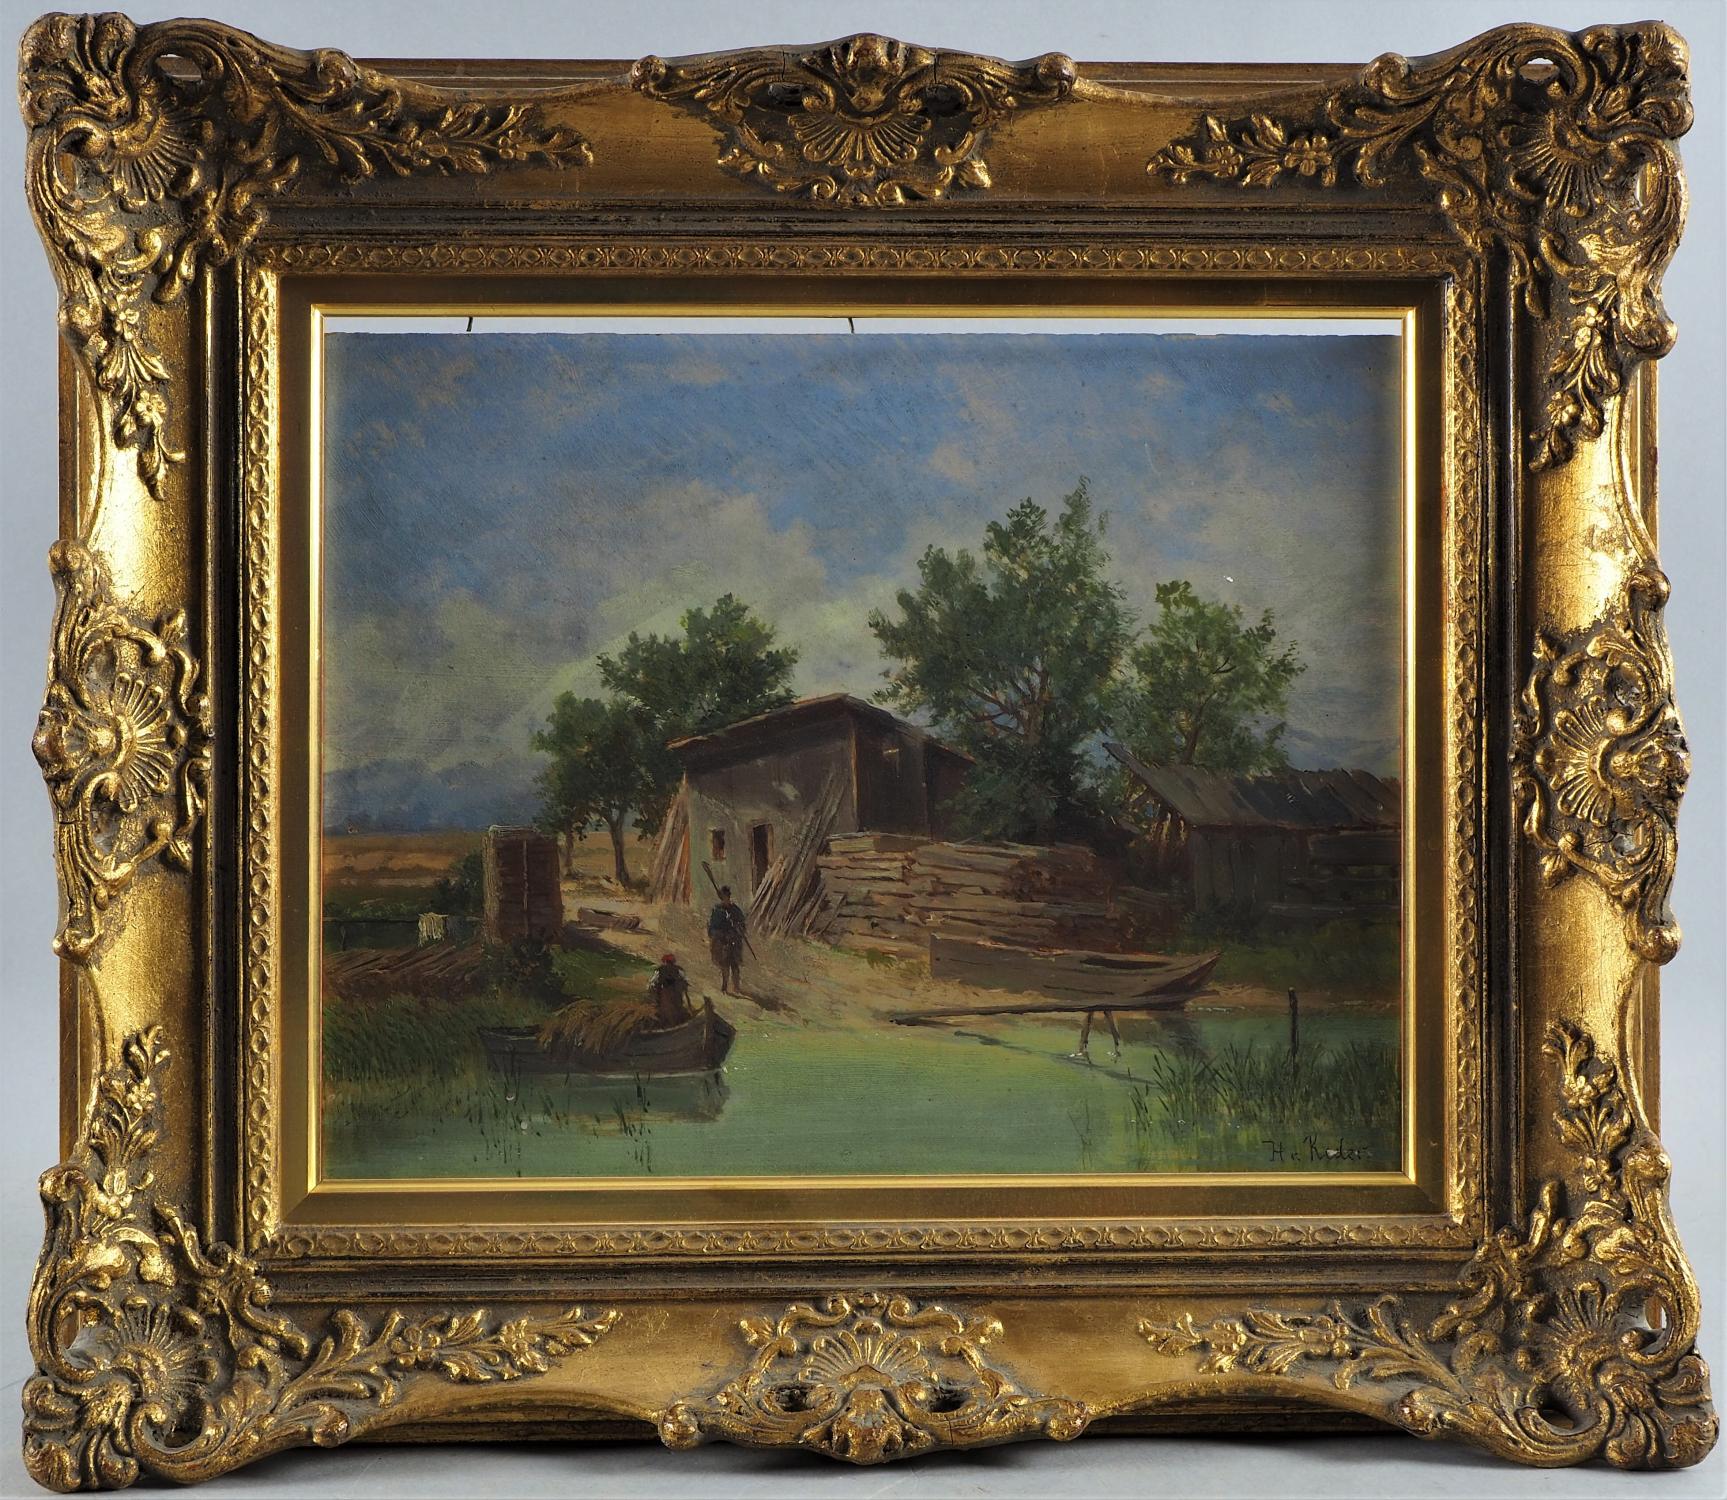 Heinrich von Reder (1824, Mellrichstadt -1909, Munich) - River Landscape 